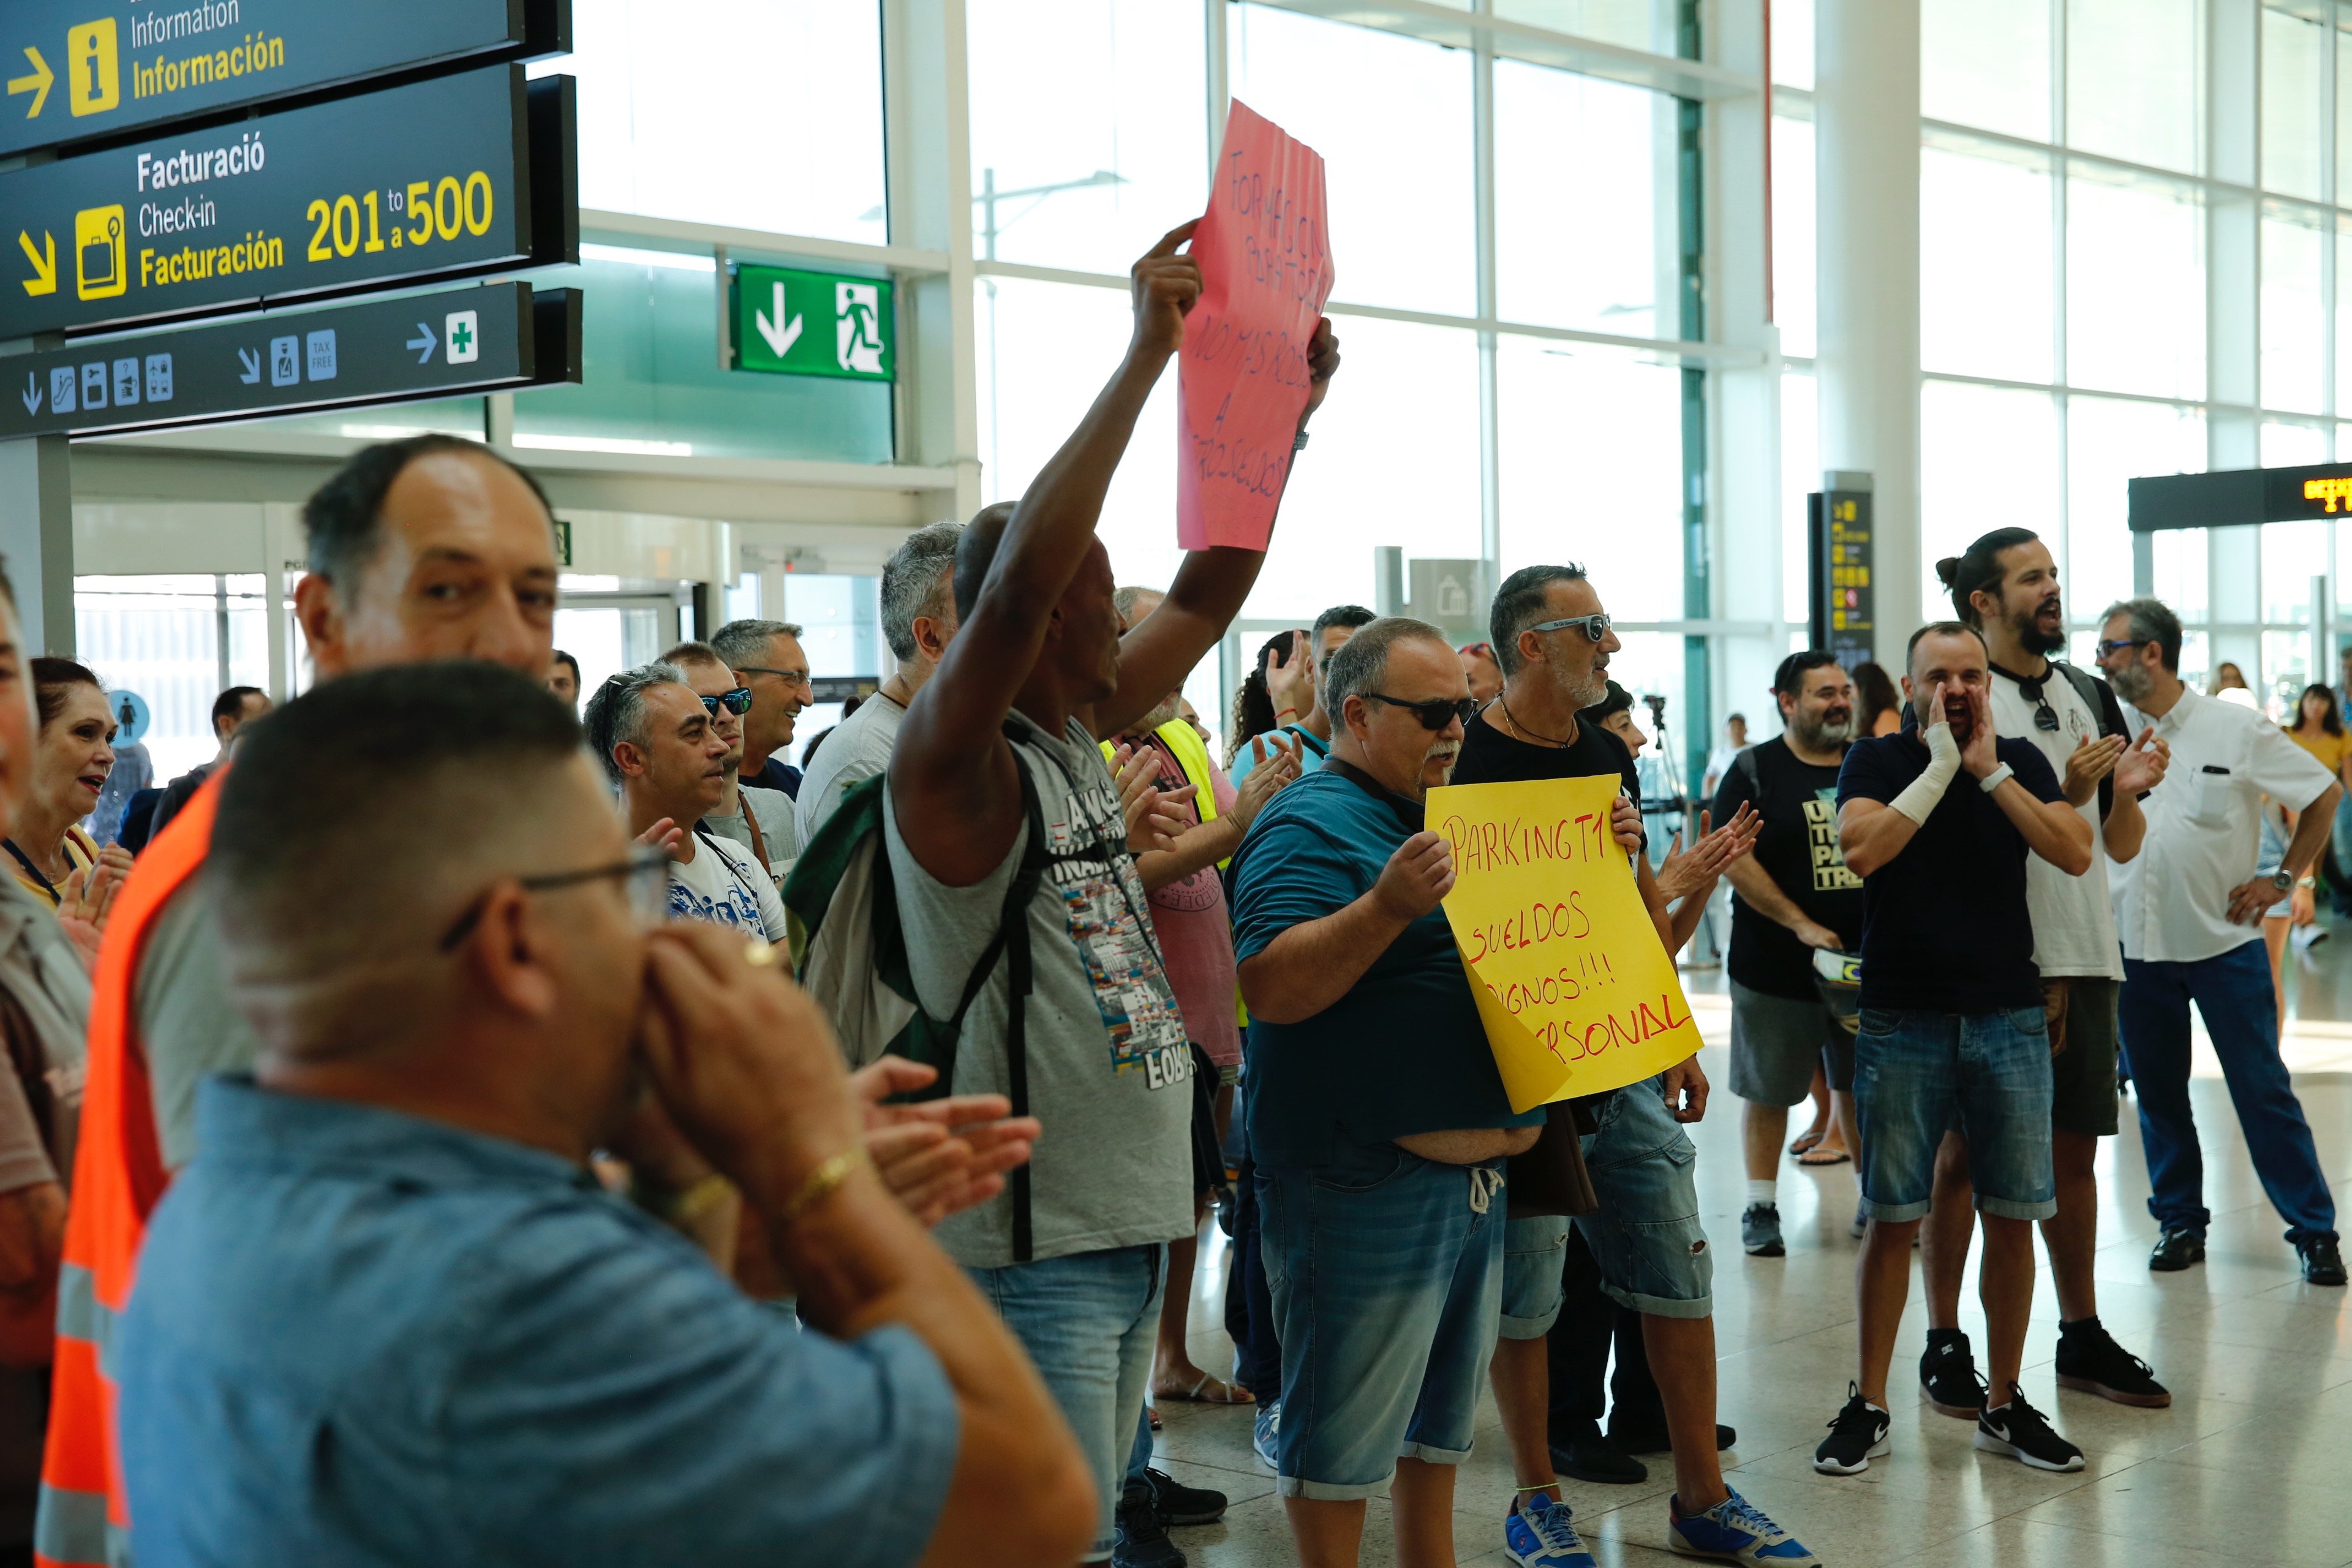 El personal de seguridad del Aeropuerto del Prat cumple un mes en huelga